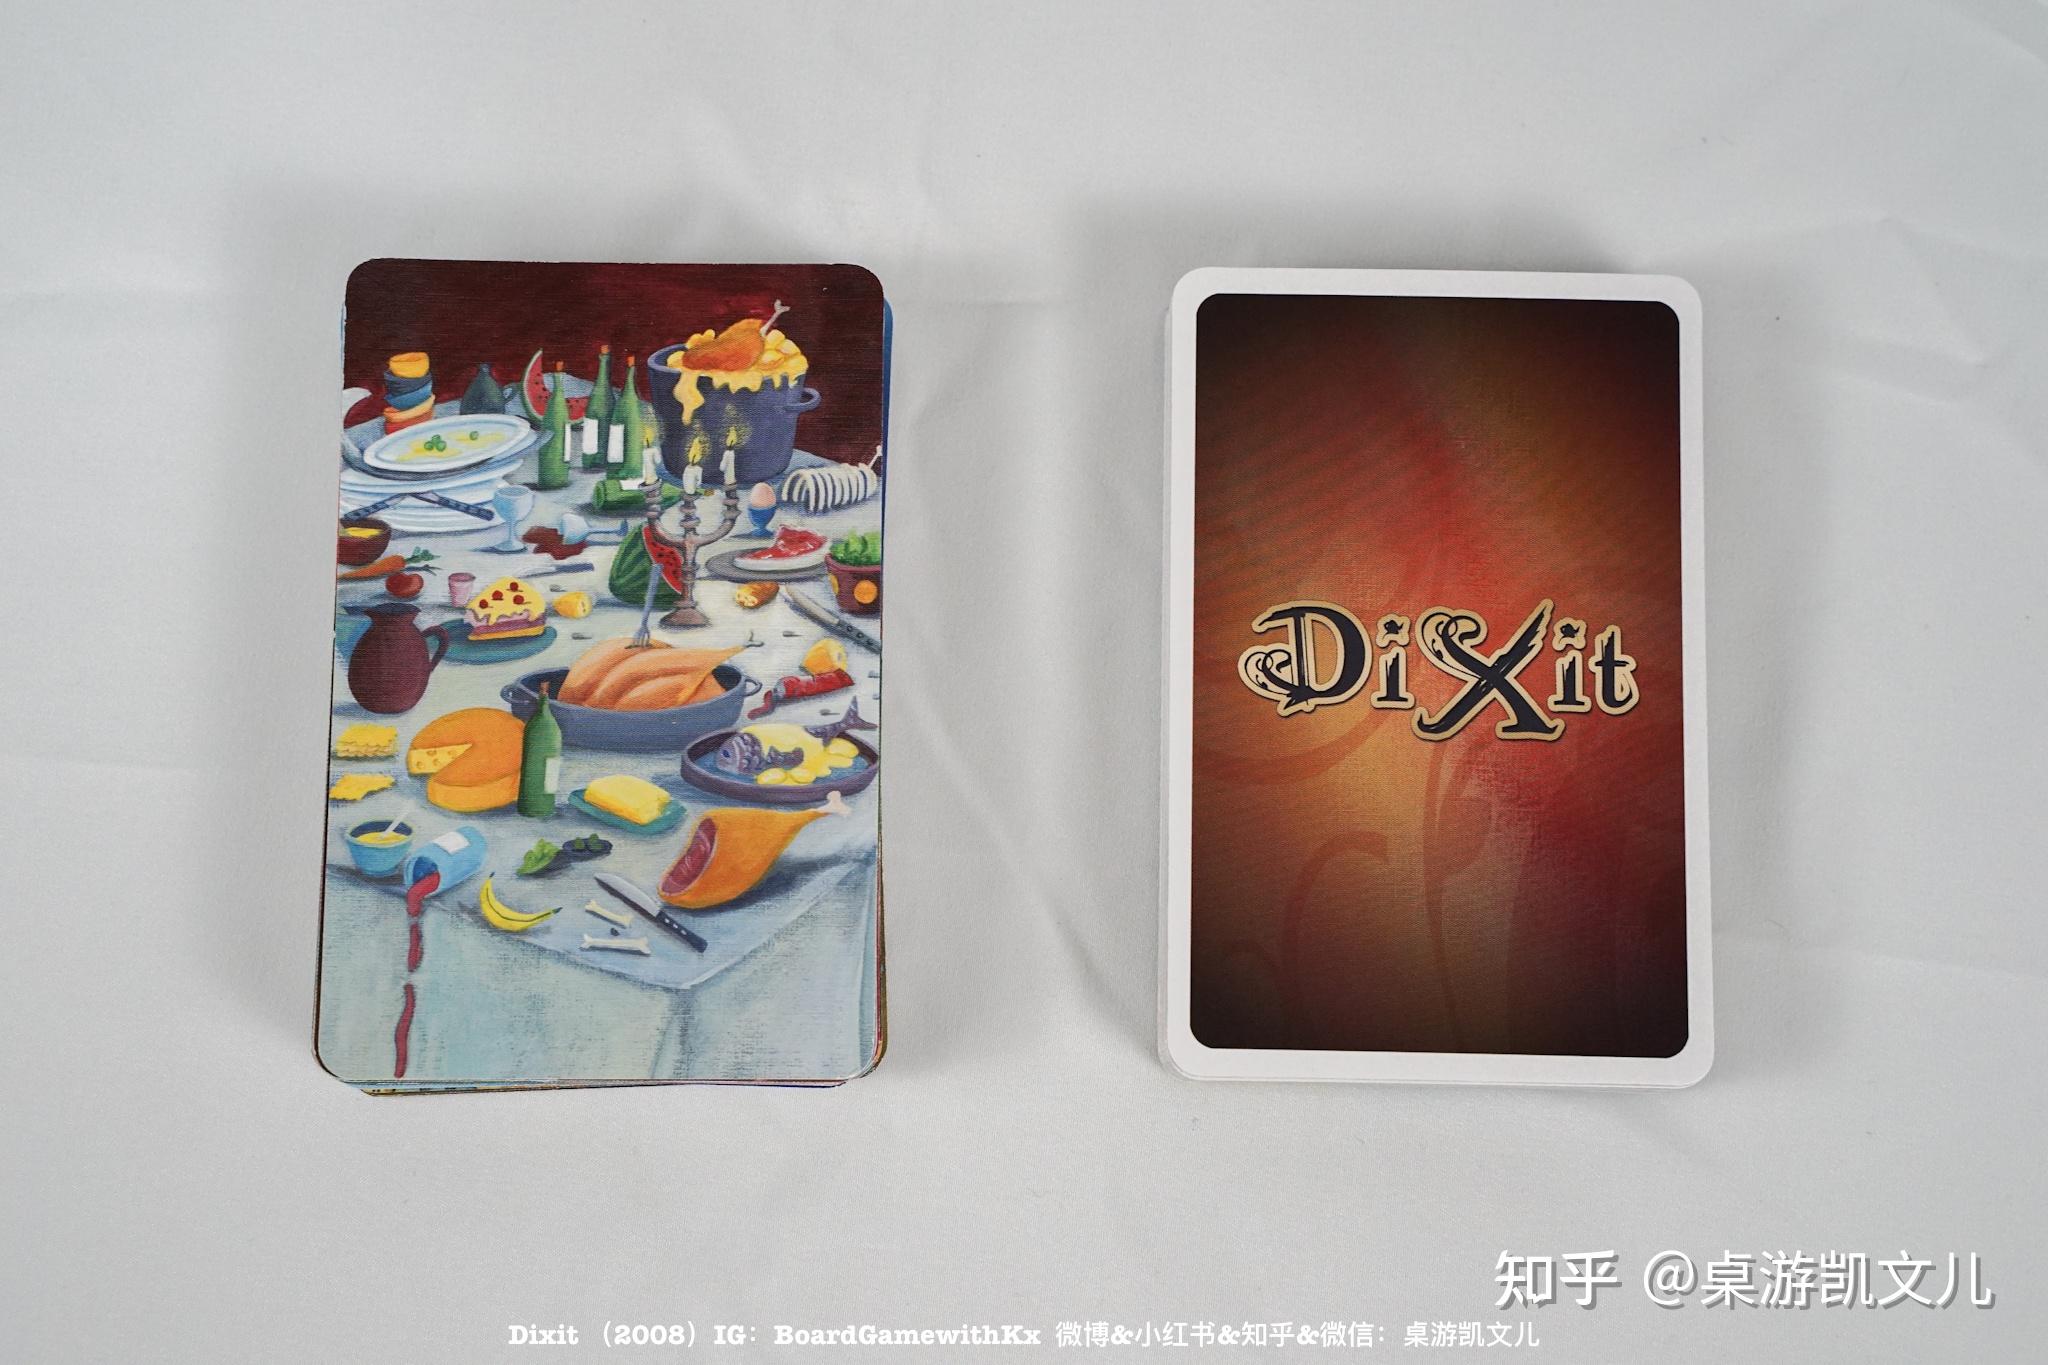 只言片语游戏卡（92张）-价格:50元-se79498348-游戏卡/点卡-零售-7788收藏__收藏热线